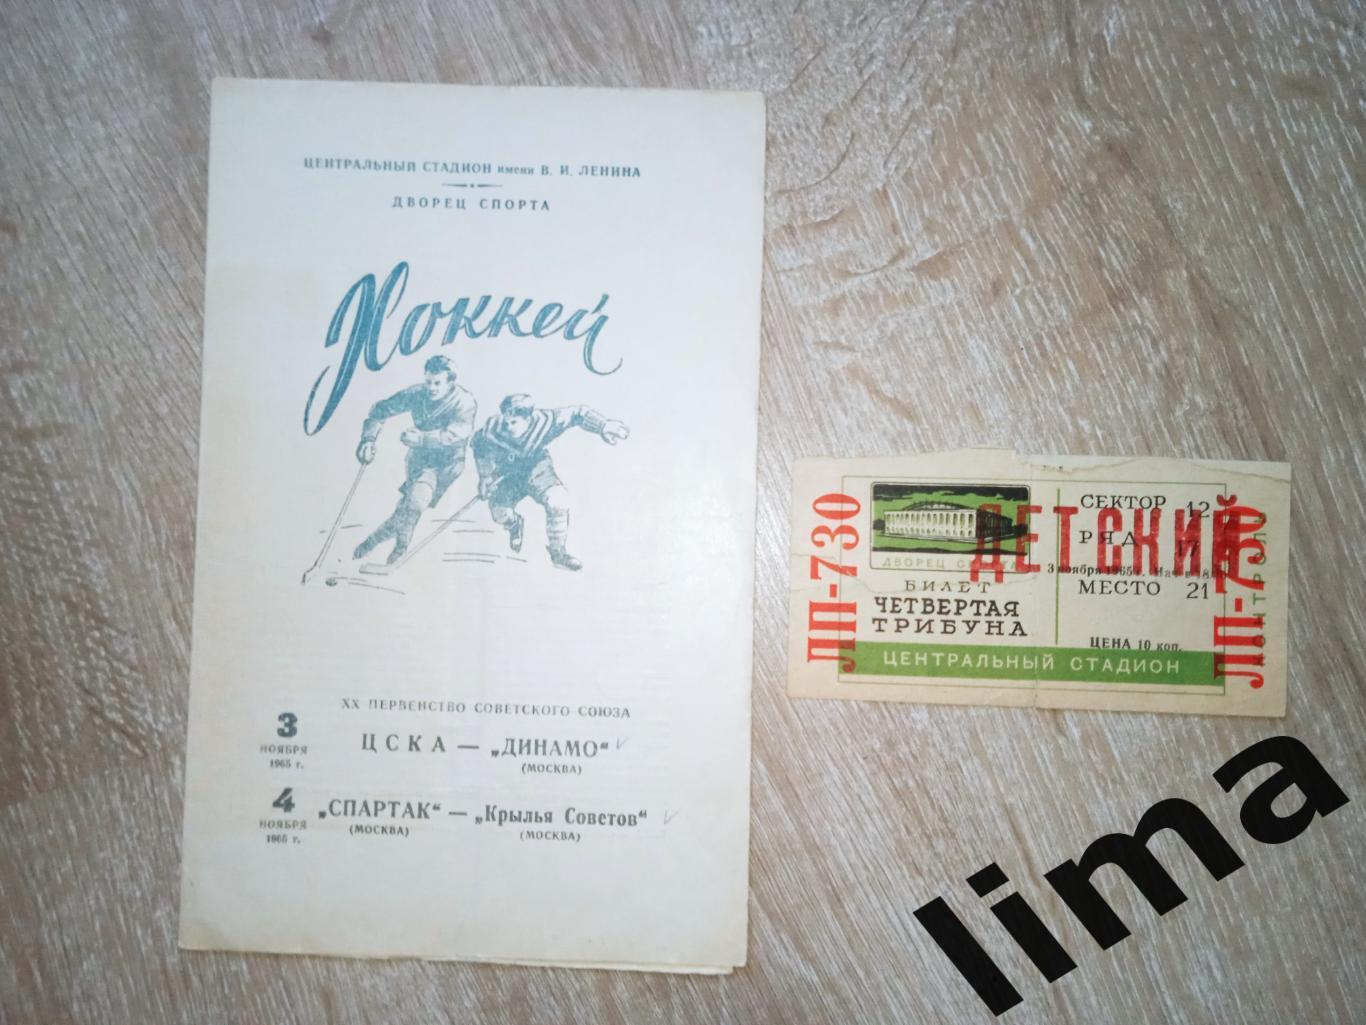 ЦСКА - Динамо+ Билет,Спартак Москва - Крылья Советов 3,4 ноября 1965